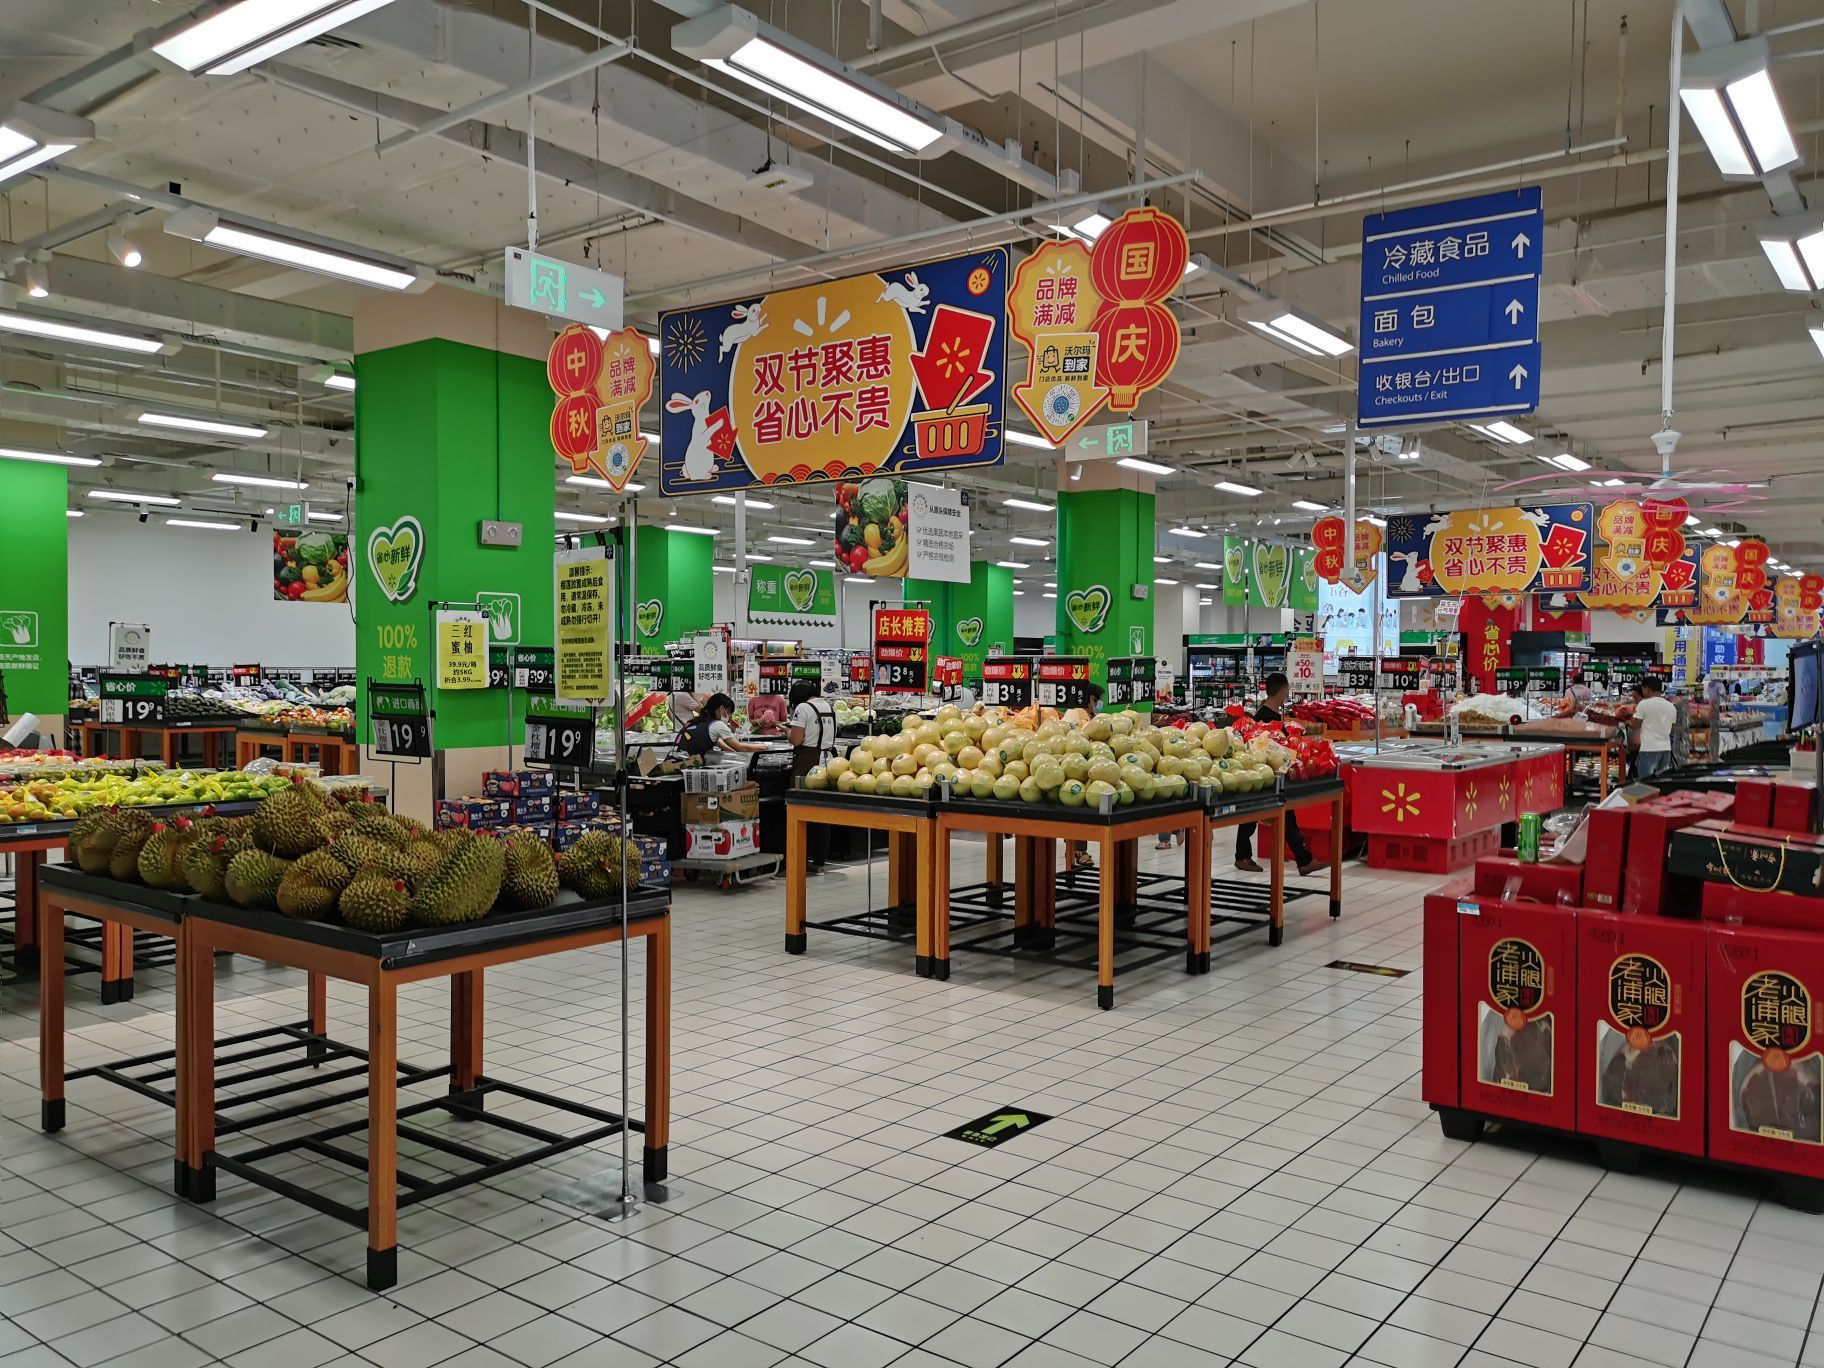 沃尔玛超市内部图片